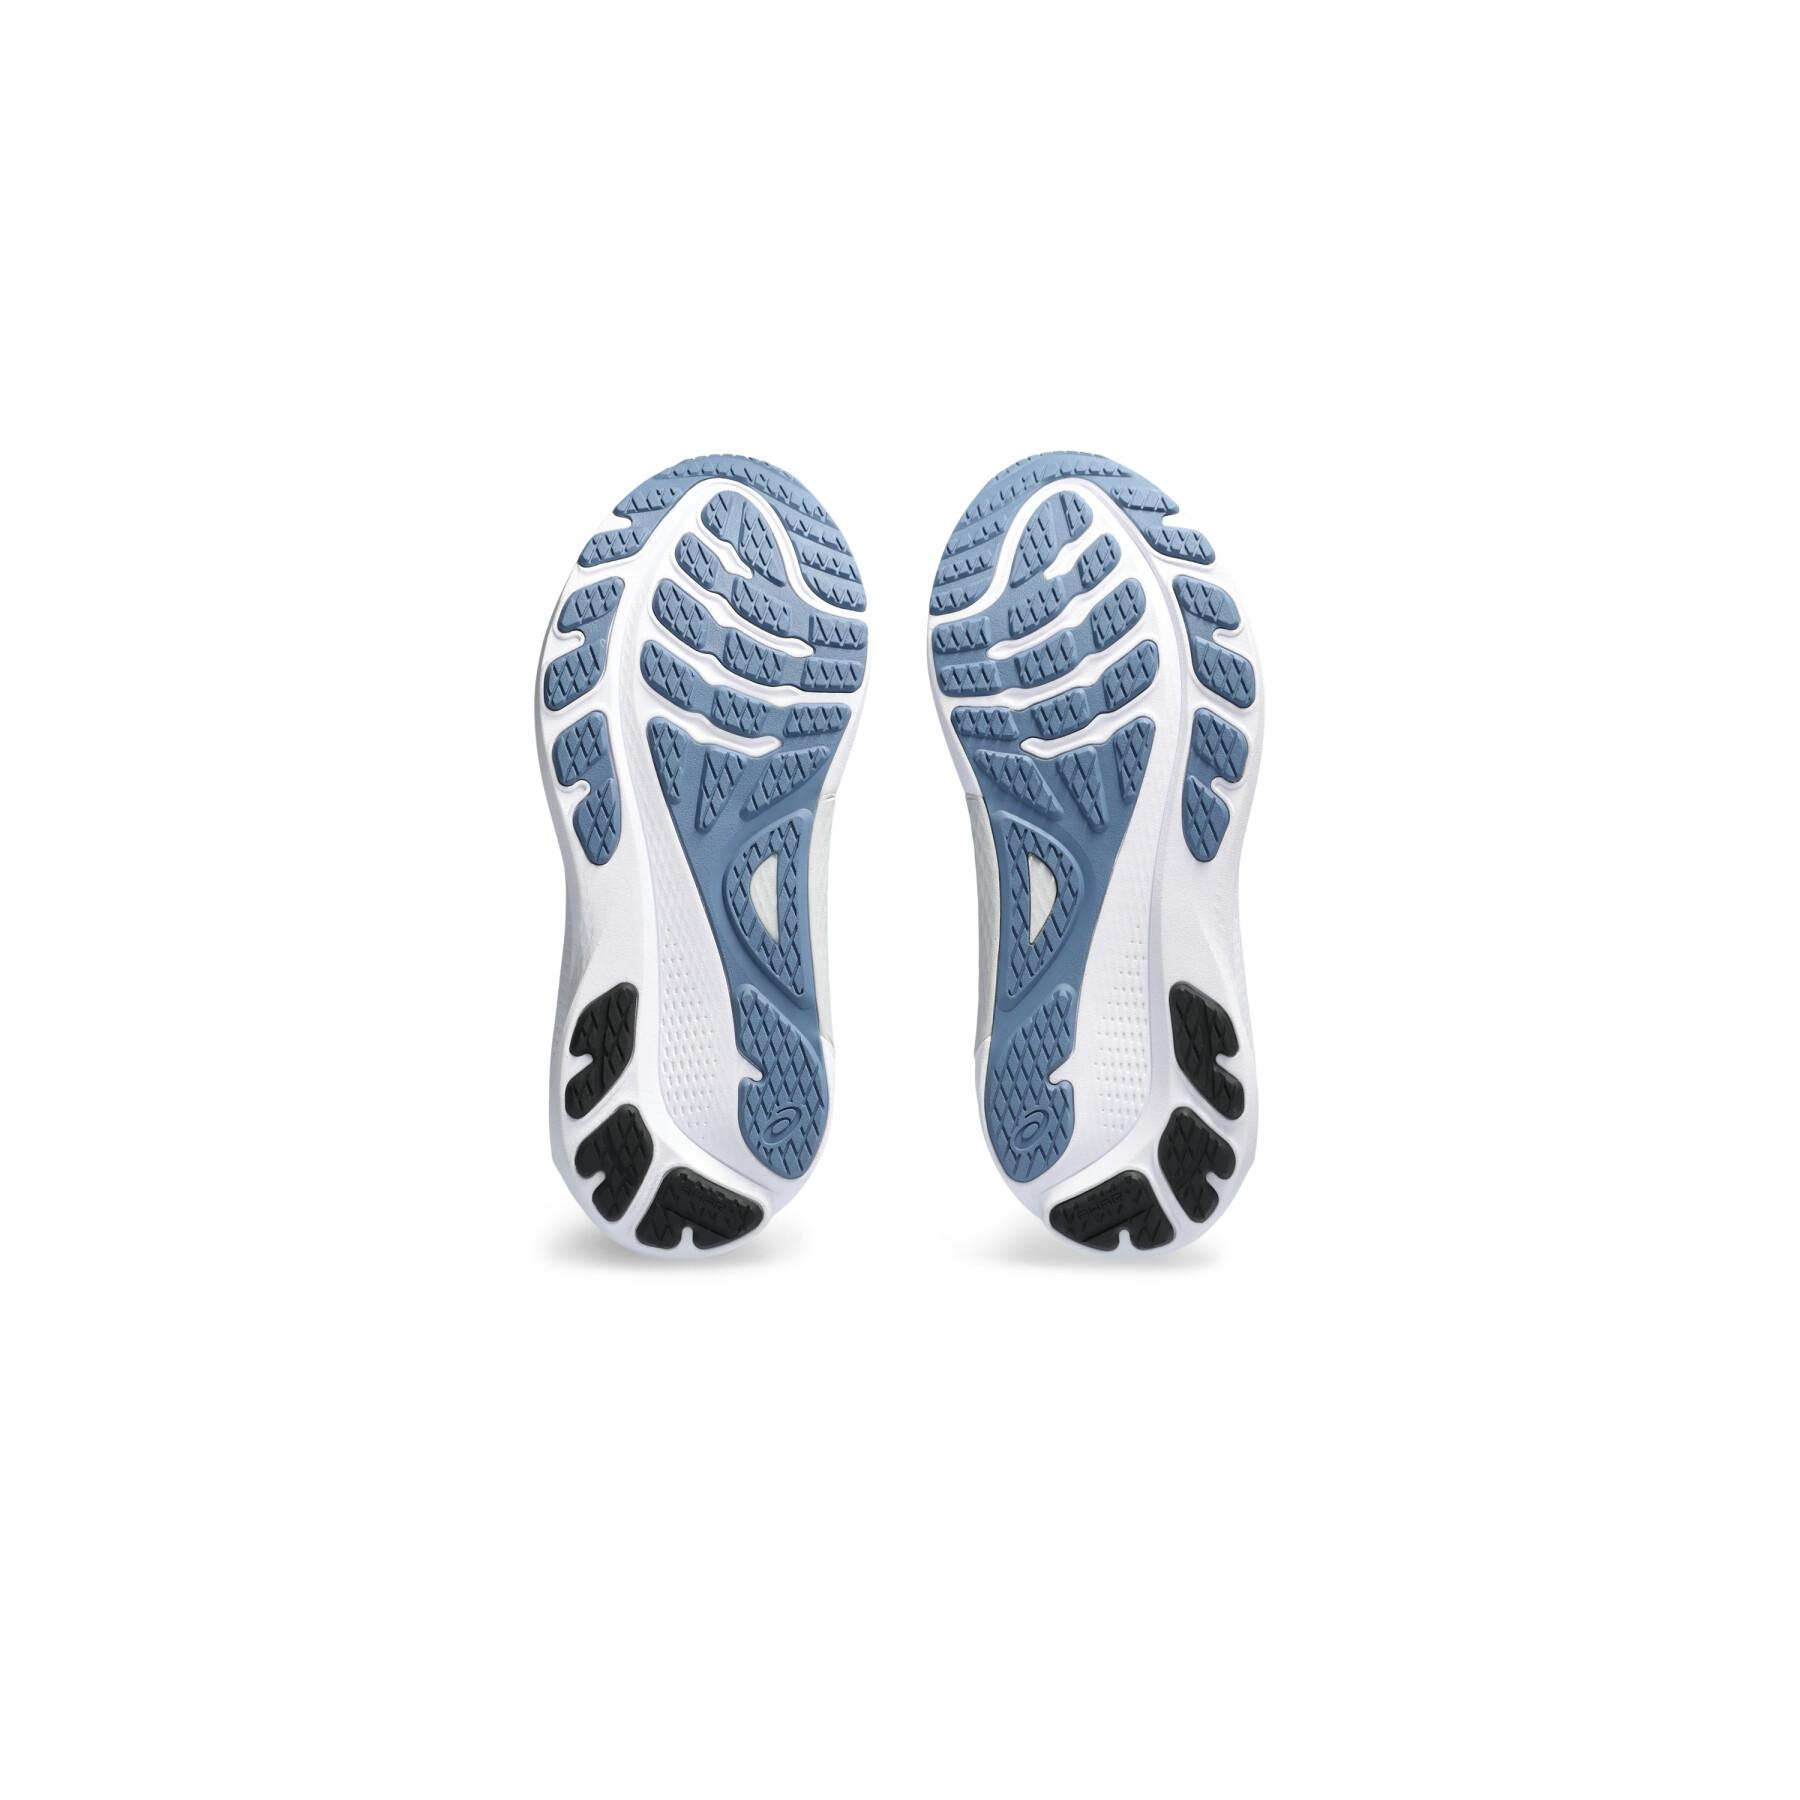 Running shoes Asics Gel-Kayano 30